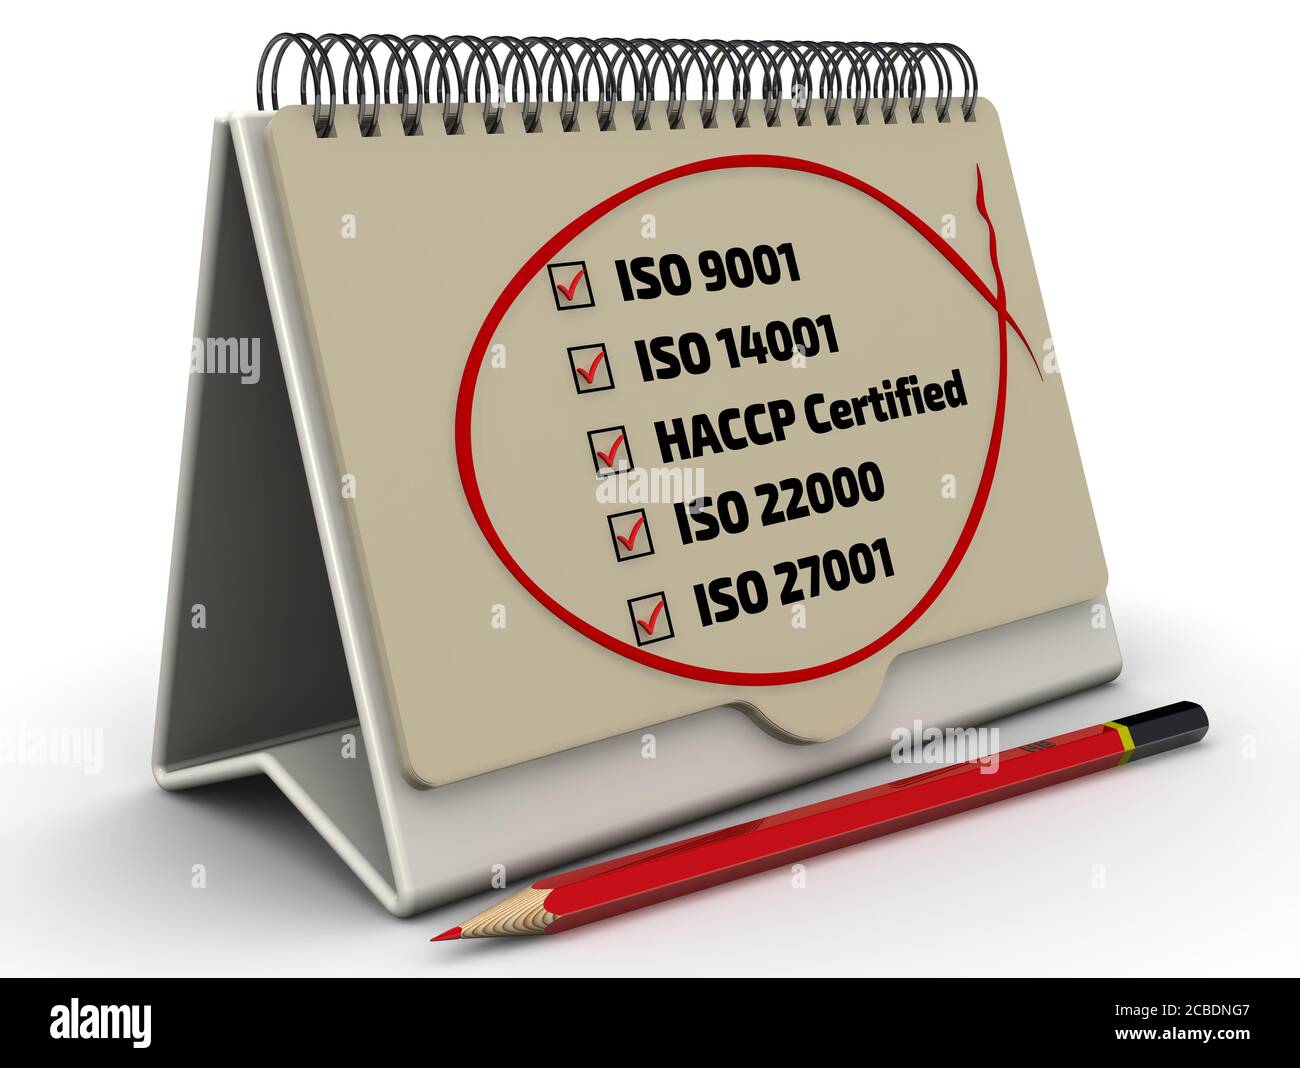 Liste des normes ISO: iso 9001; iso 14001; haccp; iso 22000; iso 27001. Crayon rouge et liste de contrôle avec des repères rouges. Illustration 3D Banque D'Images